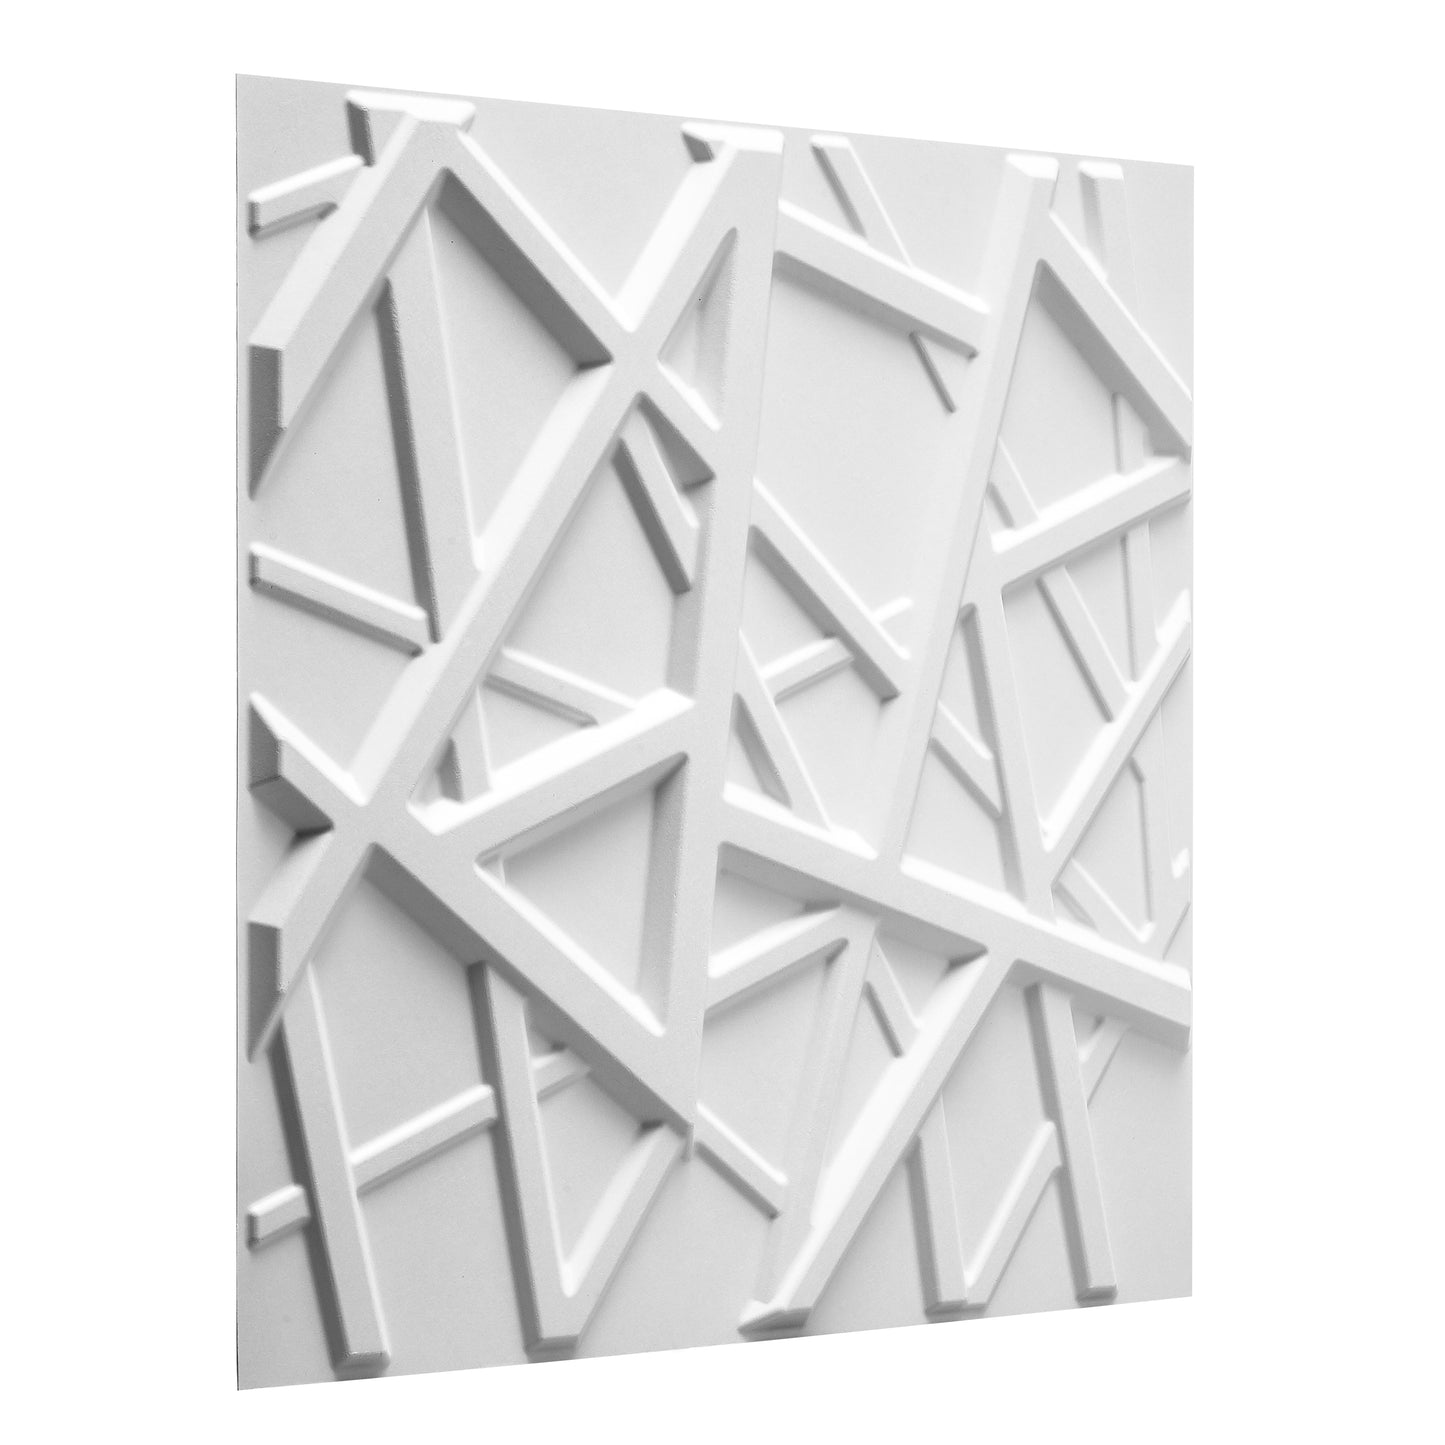 Olivia design - 3D Wall Panels